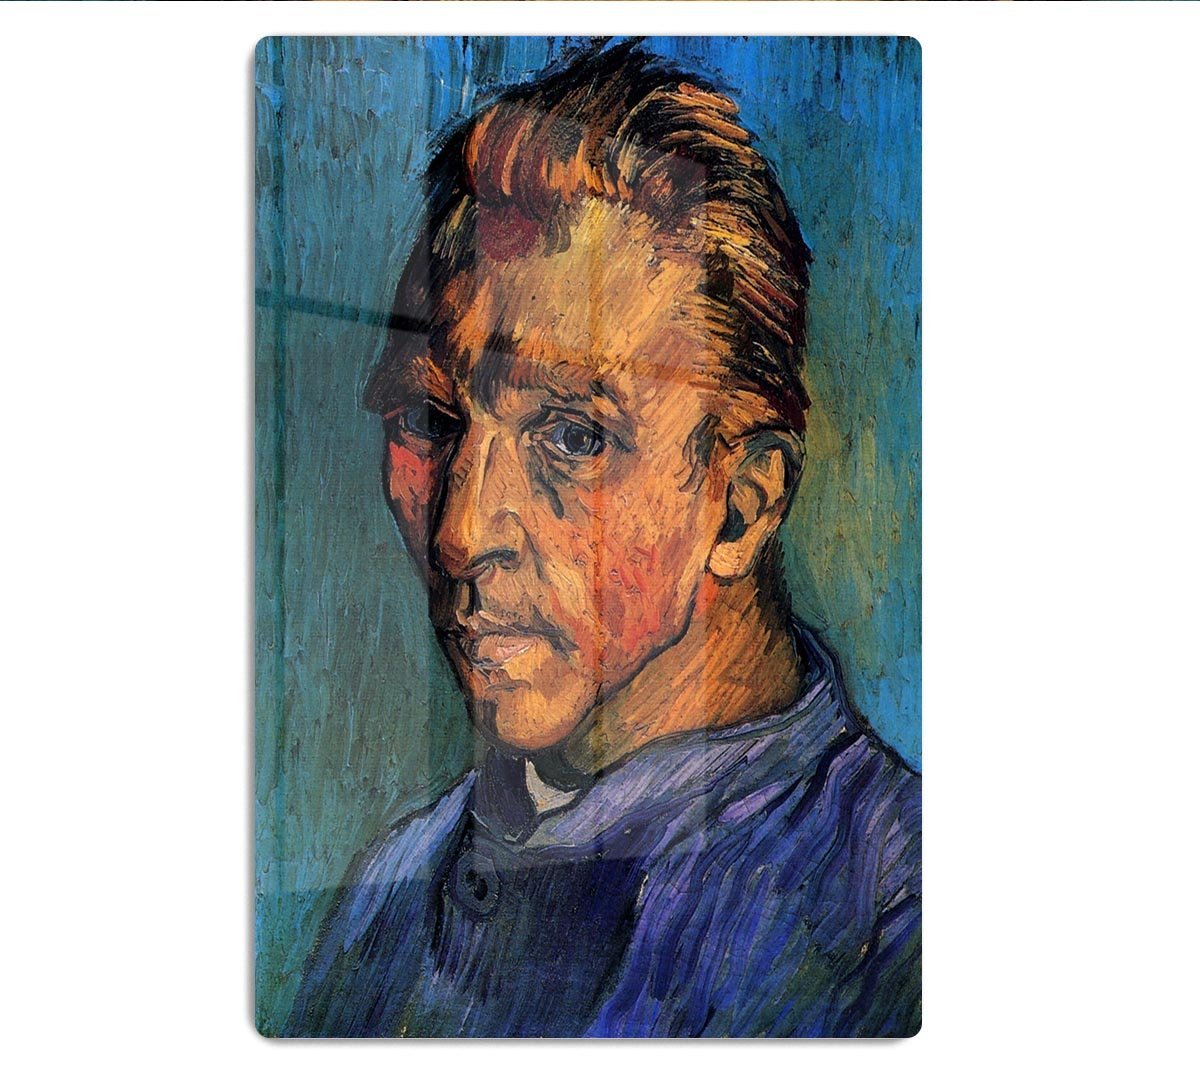 Self-Portrait by Van Gogh HD Metal Print